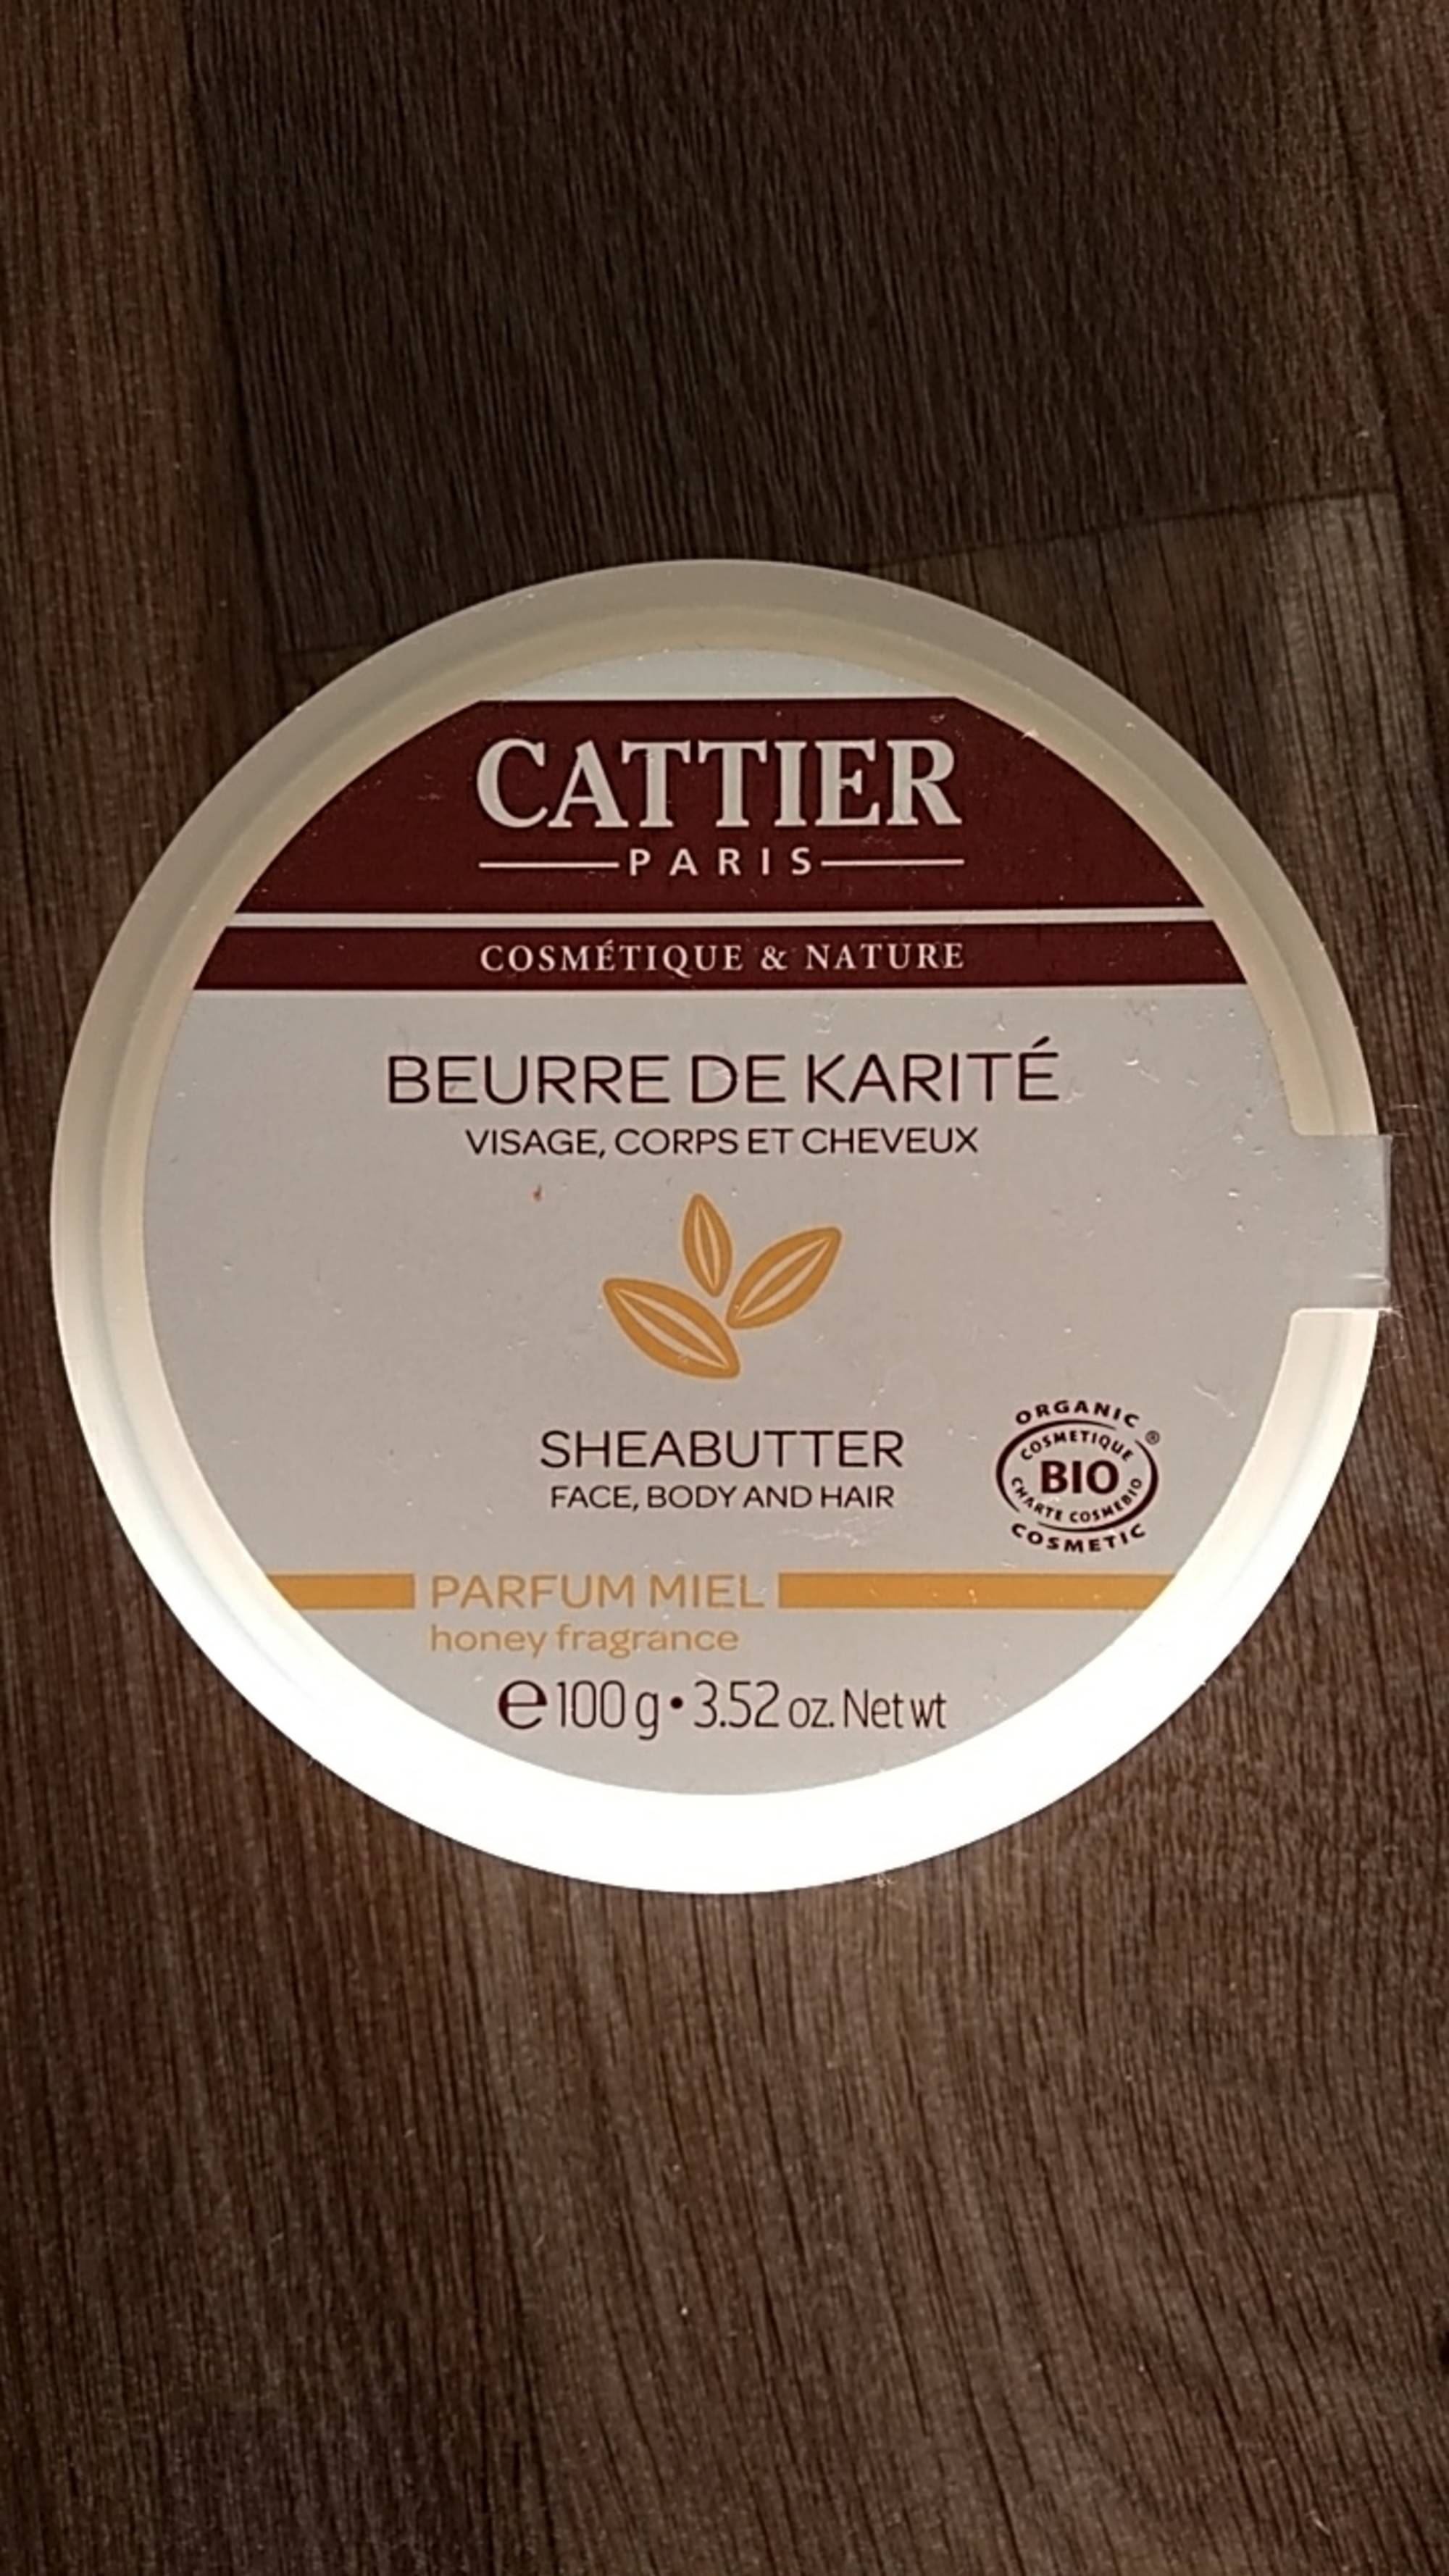 CATTIER PARIS - Beurre de karité bio - Visage corps cheveux